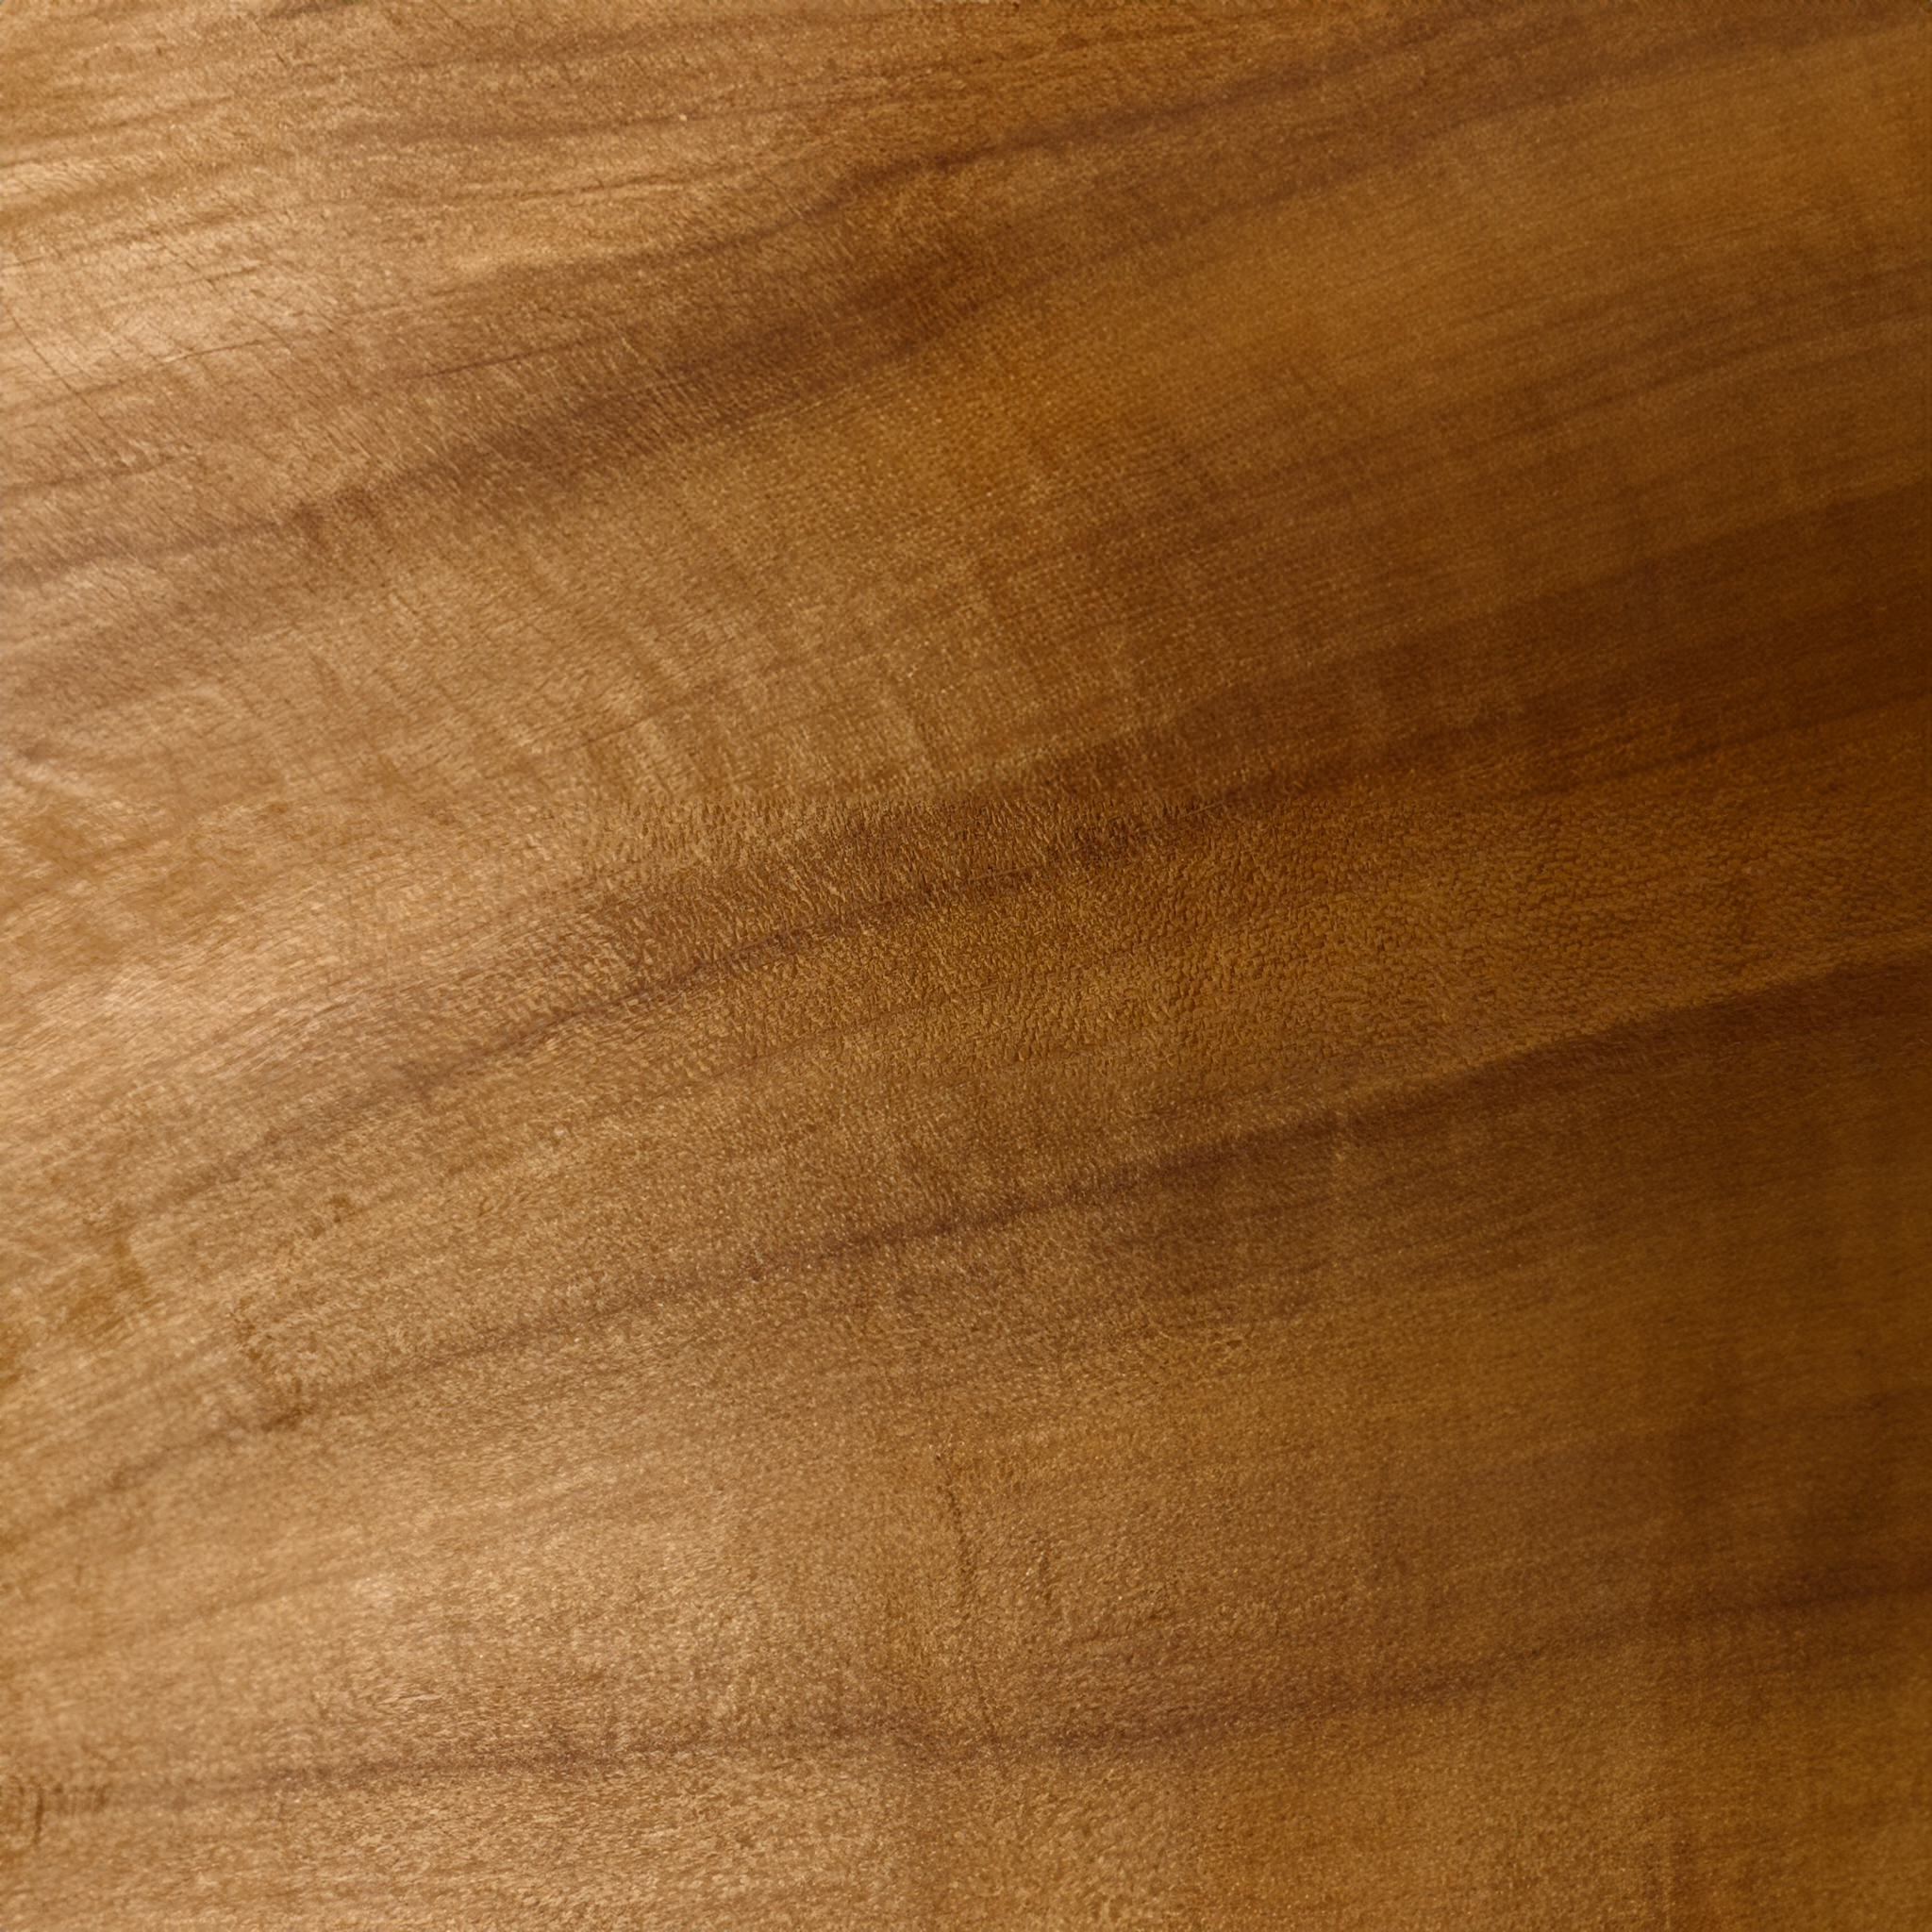 Pappel o nachhaltige Holzpflege aus 100% natürlichen Inhaltsstoffen. studio moreandless